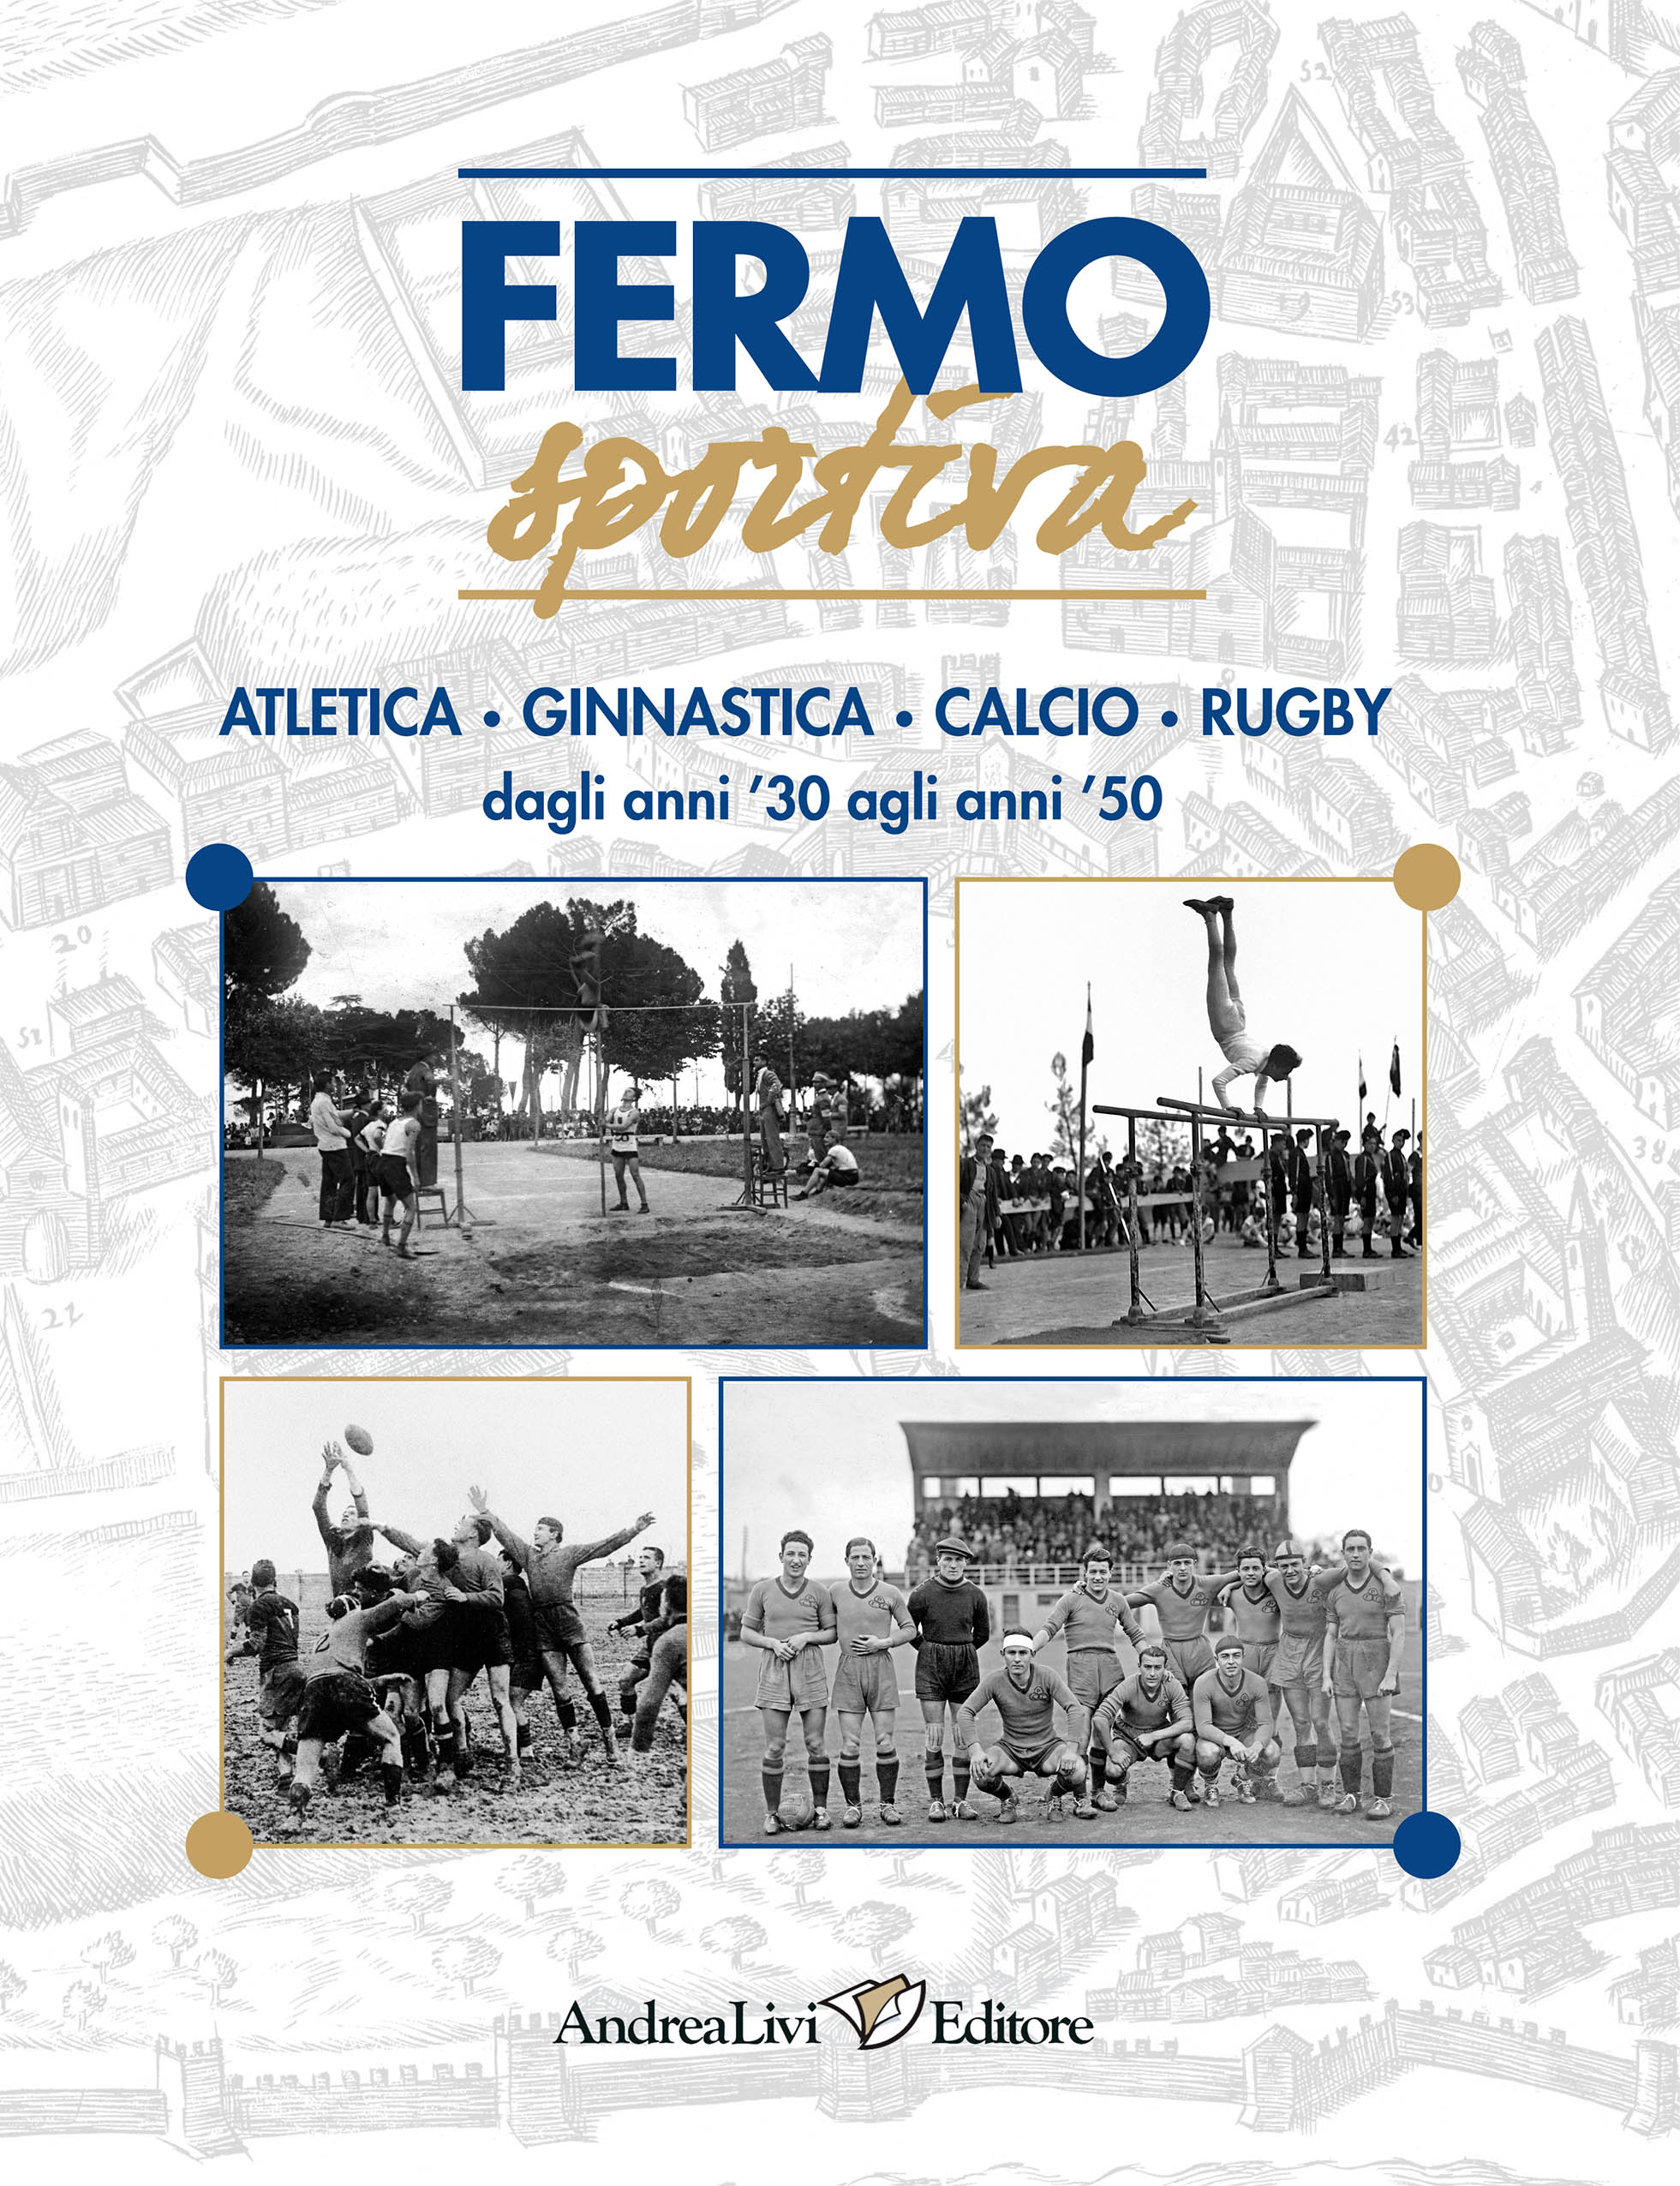 Fermo sportiva. Atletica • Ginnastica • Calcio • Rugby dagli anni ’30 agli anni ’50, a cura di Andrea Livi e Sabrina Sollini